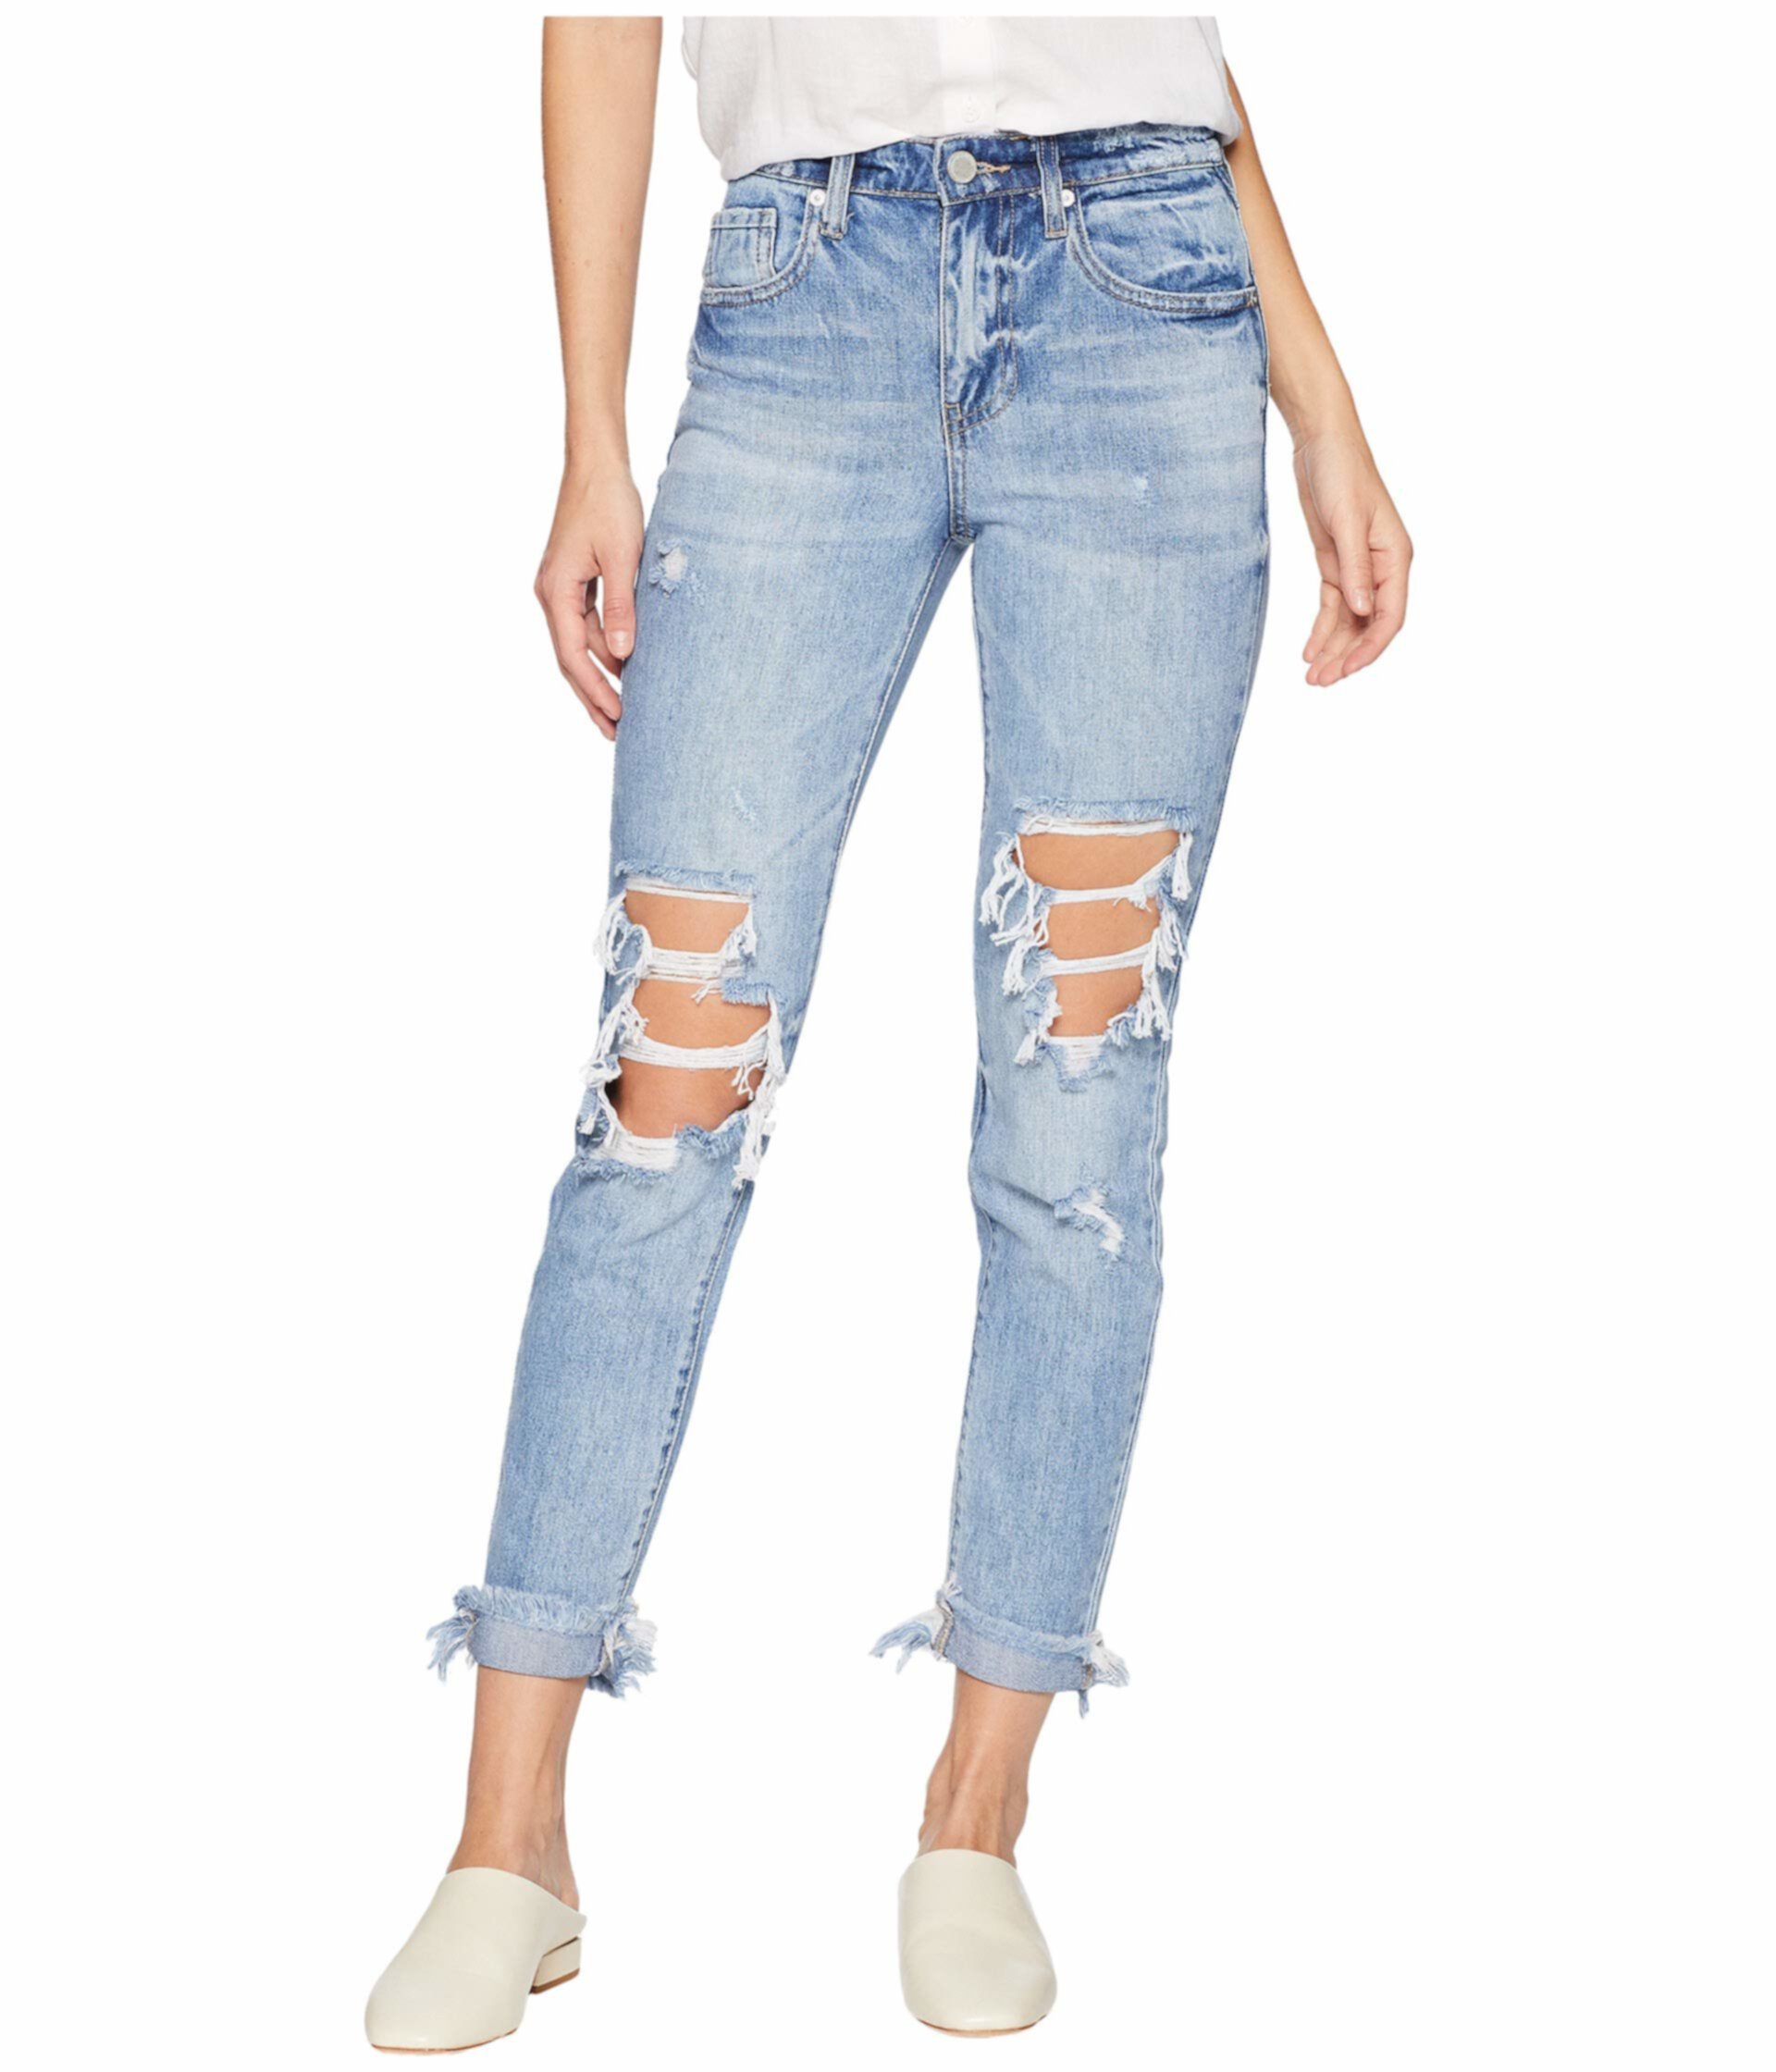 Джинсовые джинсы с джинсами в тонкую ногу Rivington Hi Rise Blank NYC